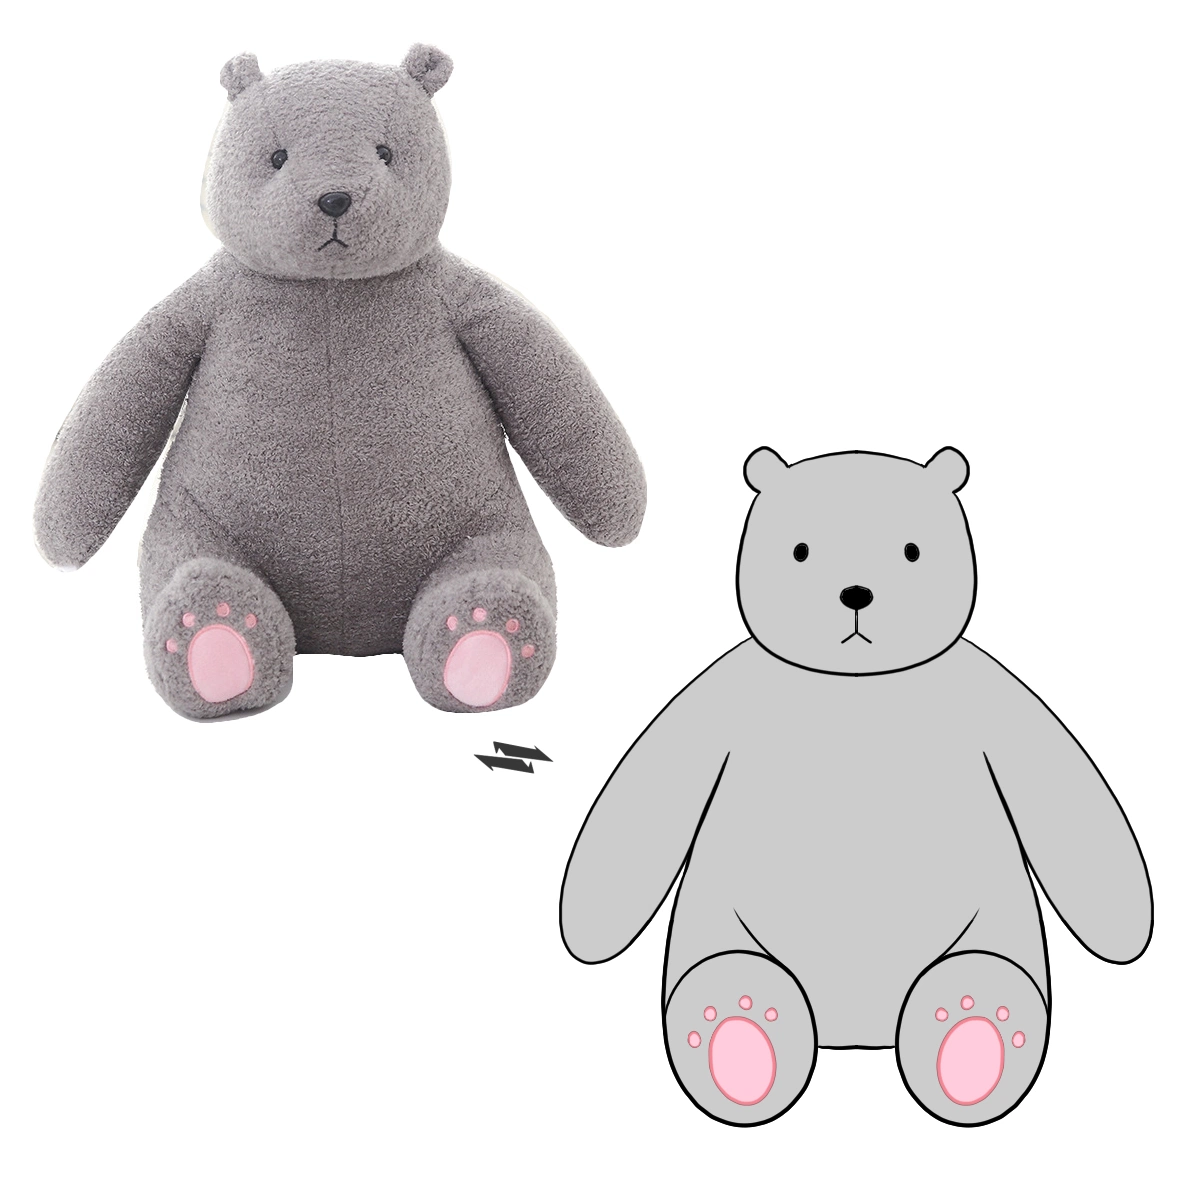 Grande taille douce de l'ours en peluche jouets en peluche personnalisé Tissus somptueux cadeau de Noël pour bébé Jouets